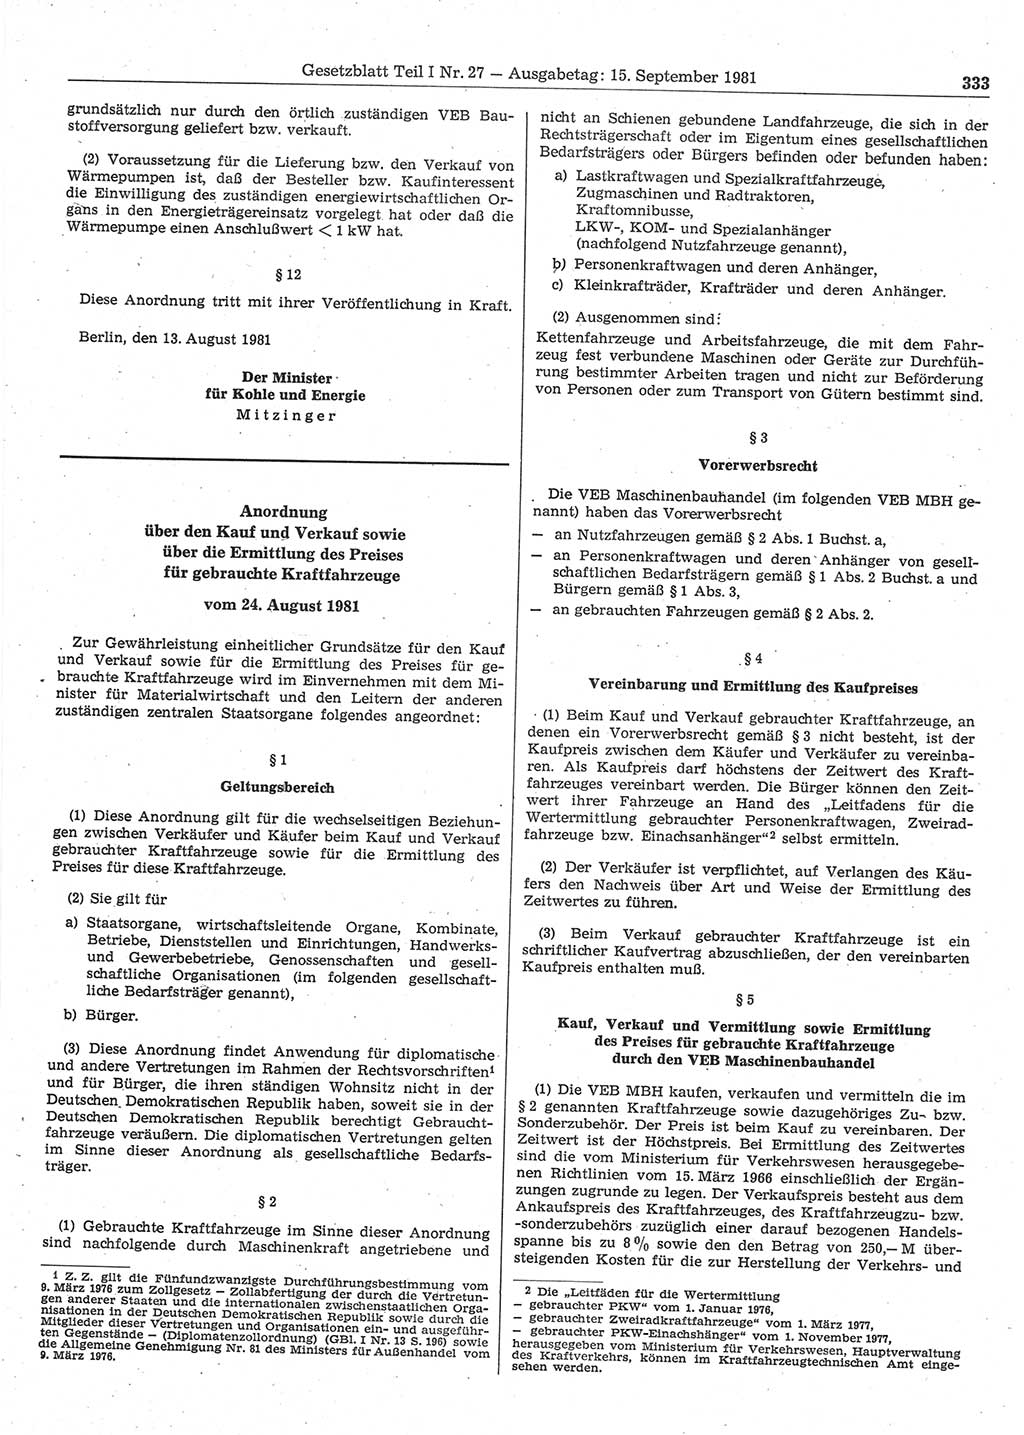 Gesetzblatt (GBl.) der Deutschen Demokratischen Republik (DDR) Teil Ⅰ 1981, Seite 333 (GBl. DDR Ⅰ 1981, S. 333)